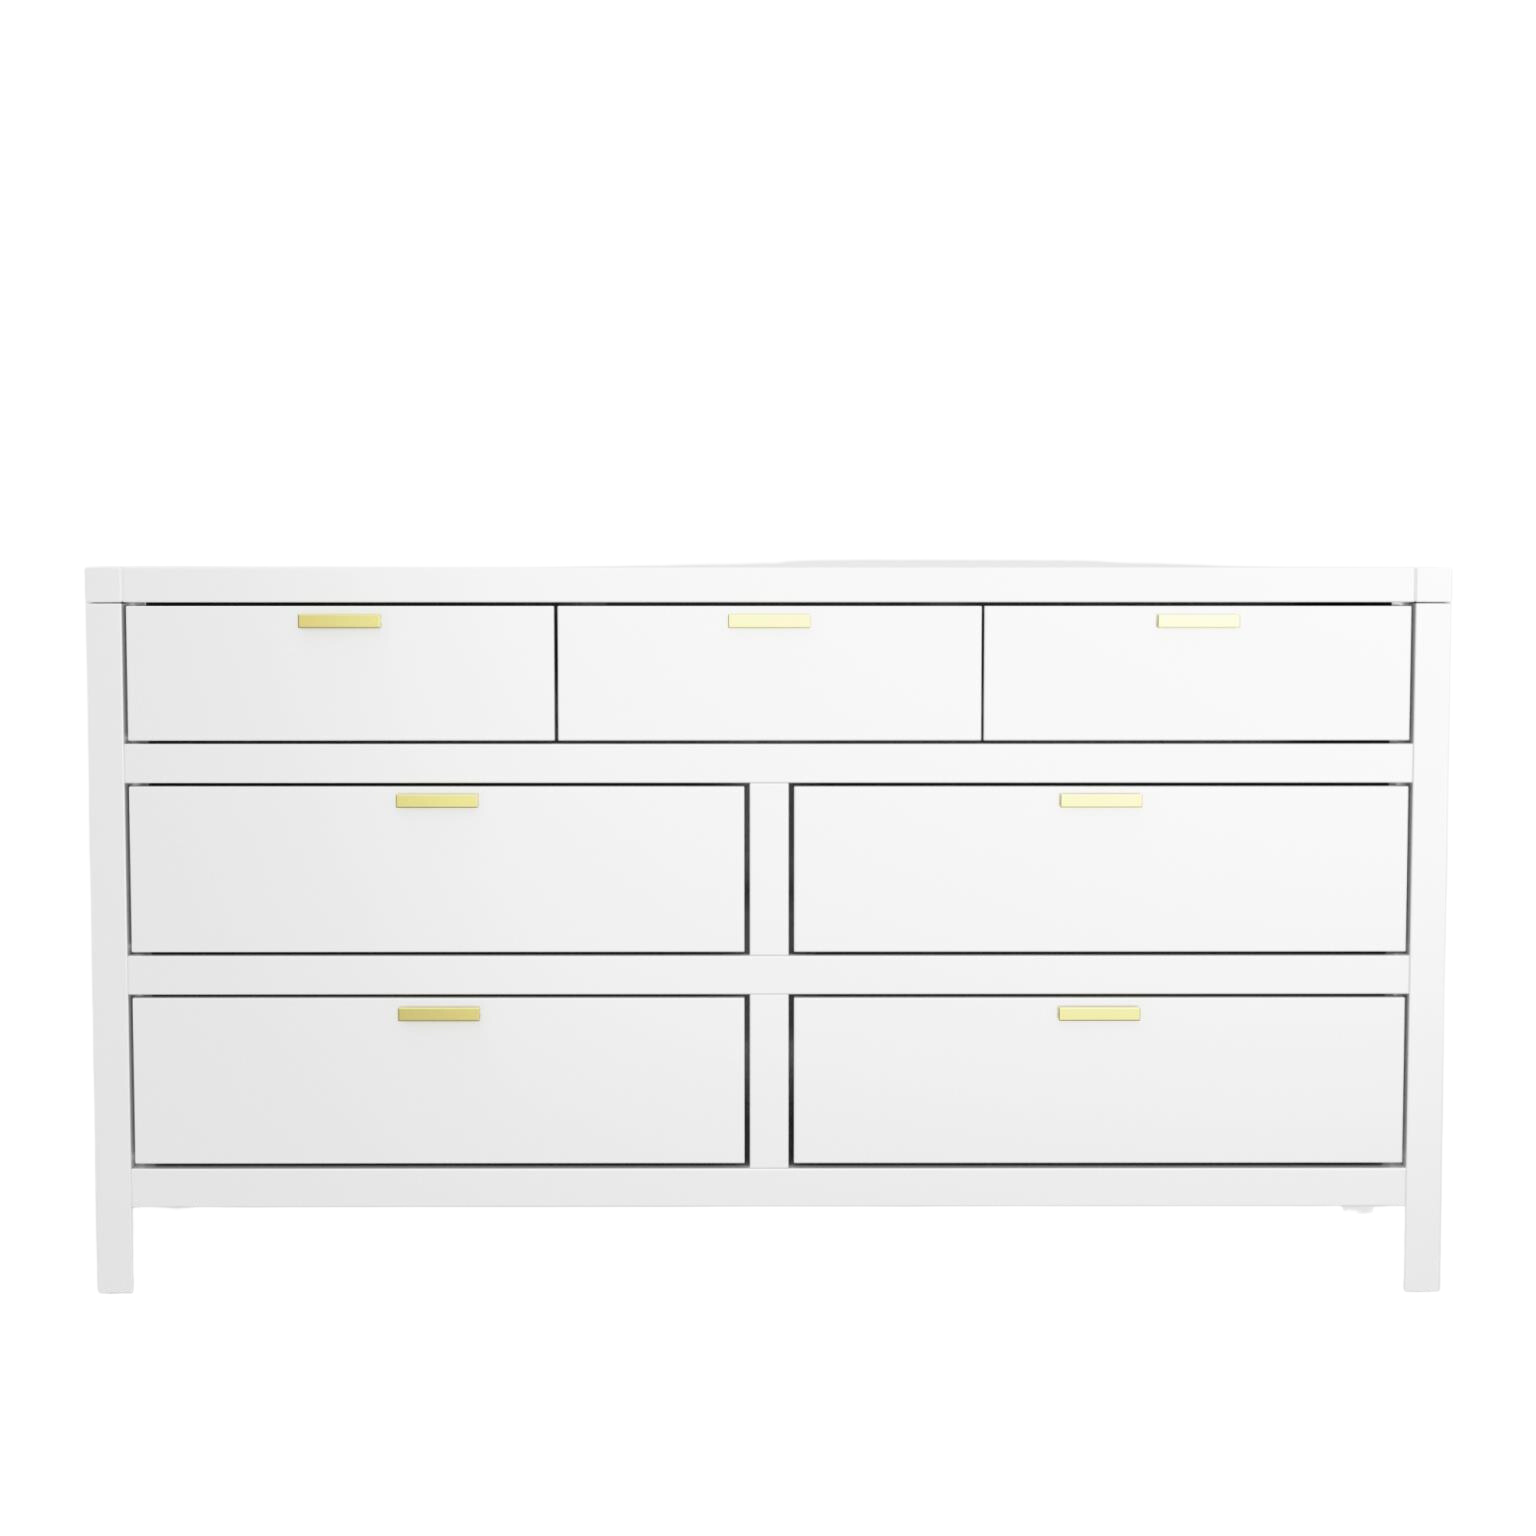 Carmel Collection Seven Drawer Dresser - White